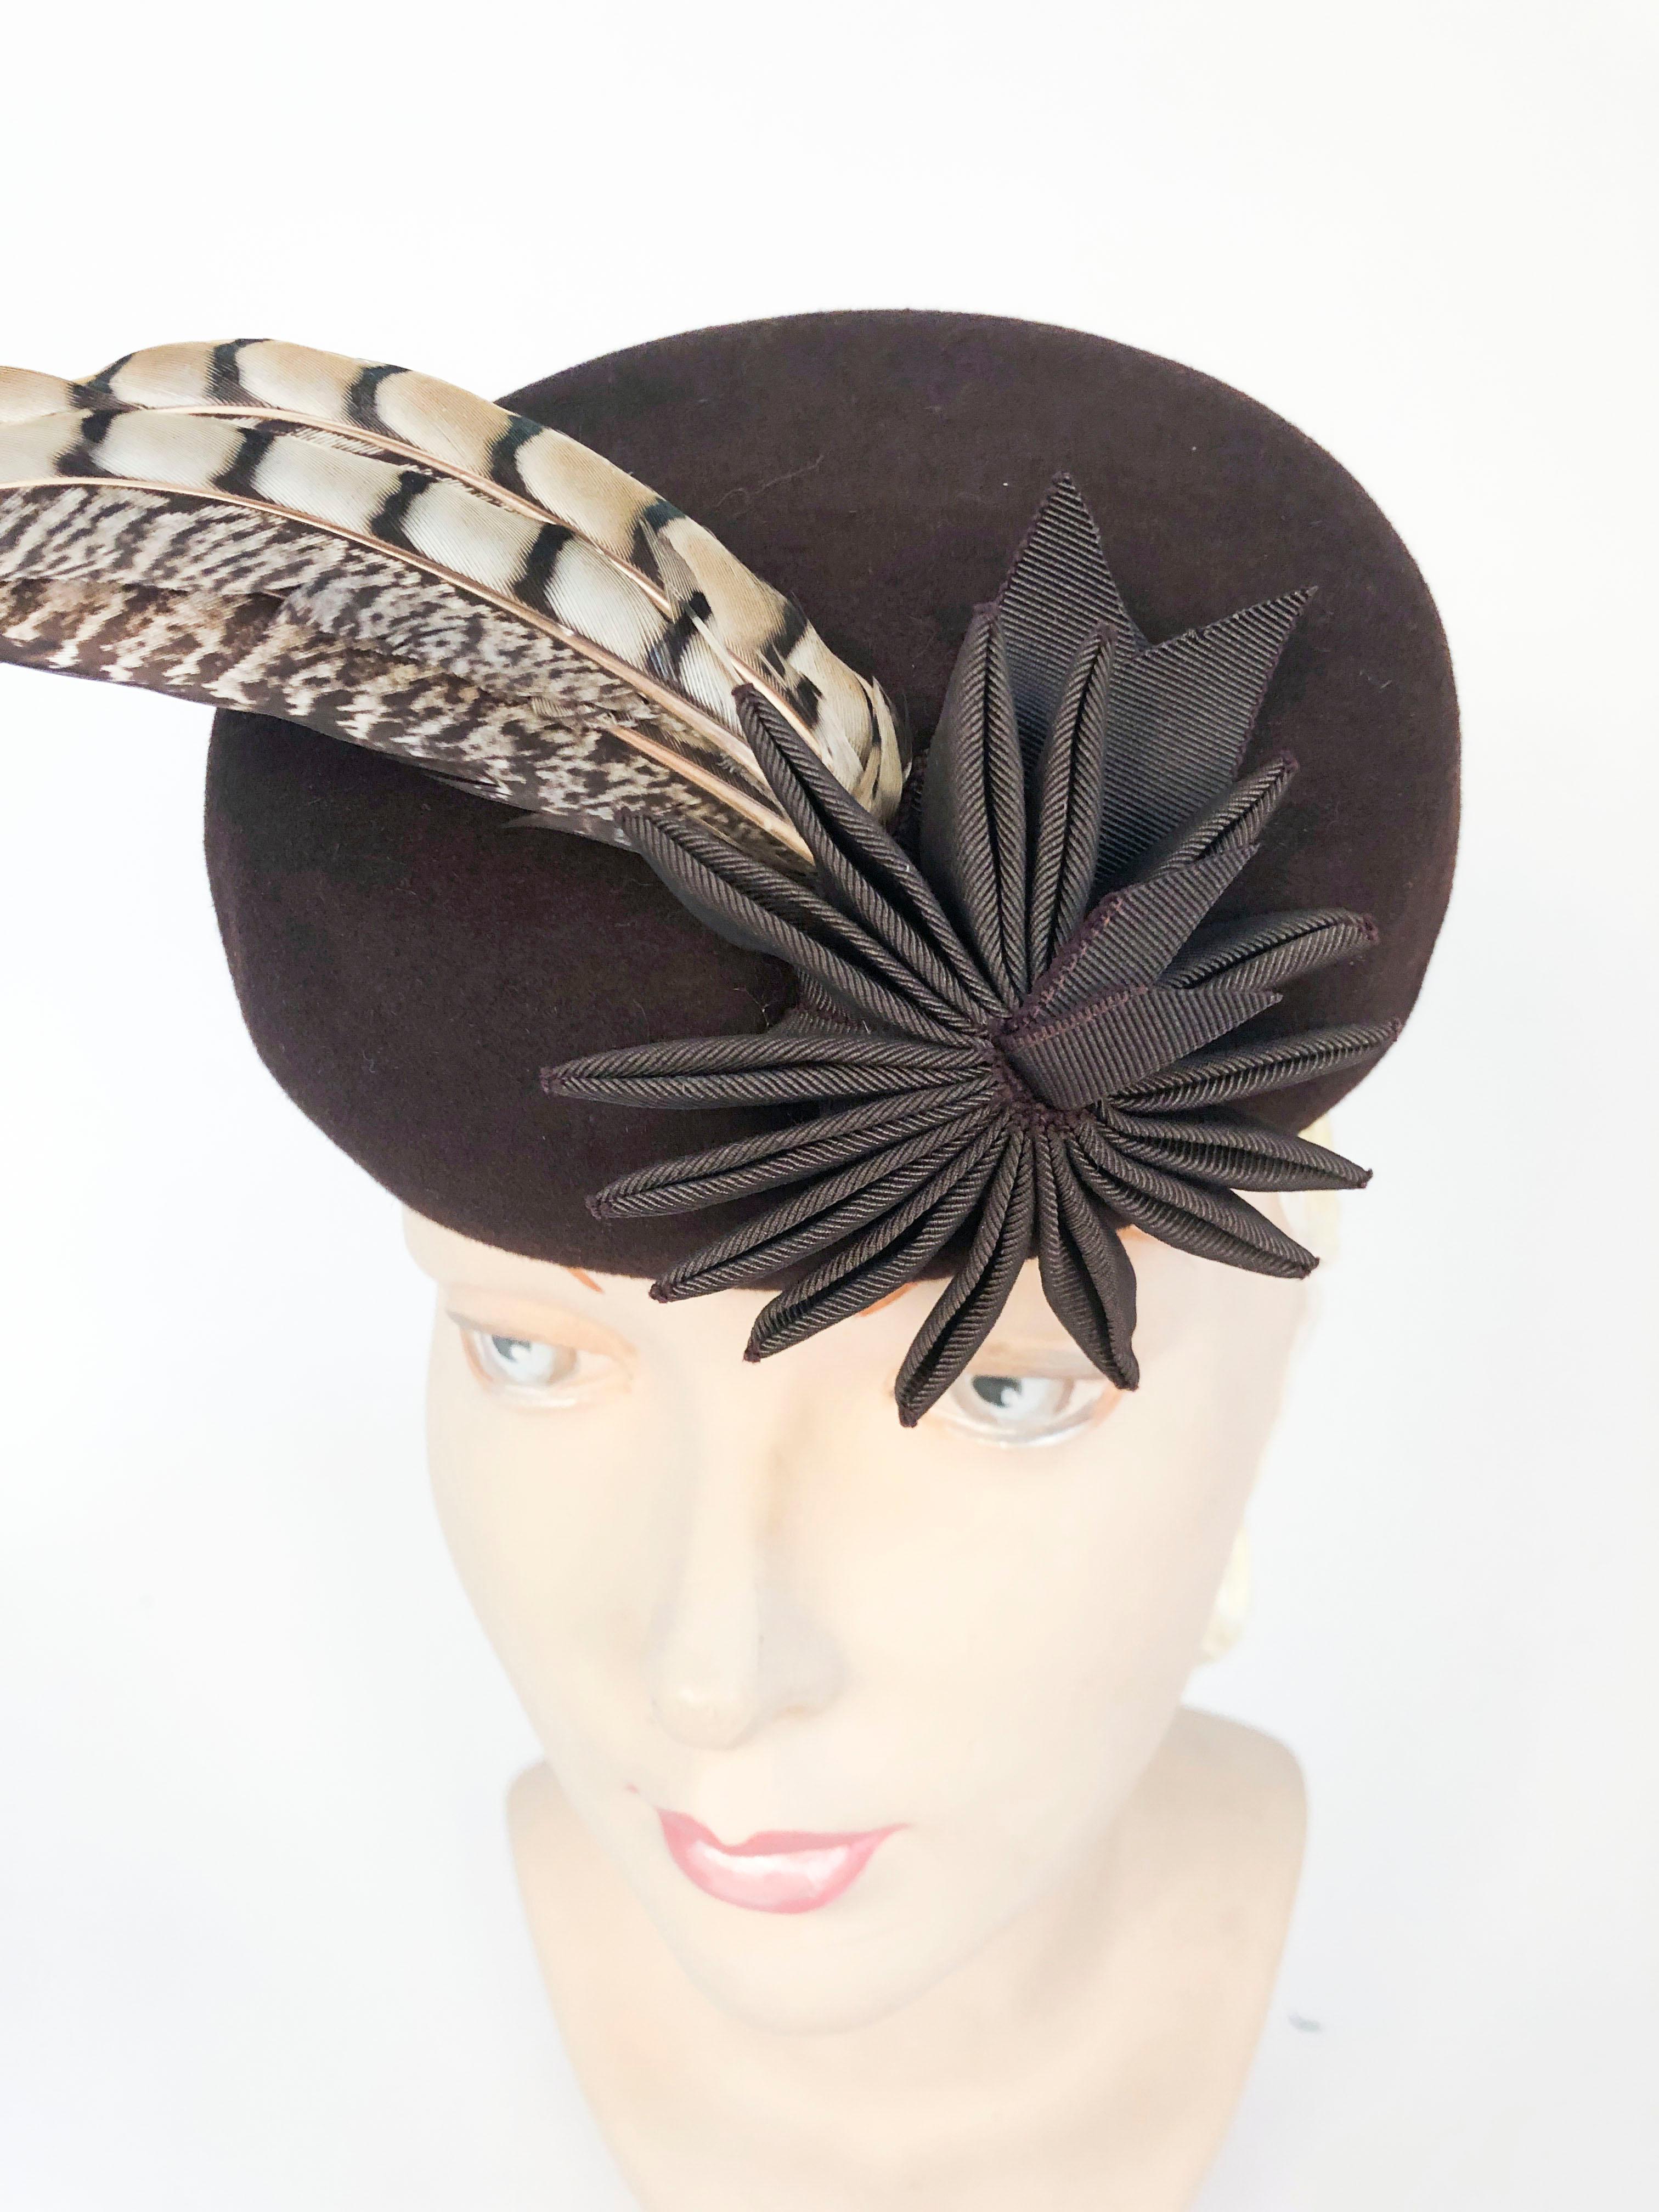 1930er/1940er Jahre Braun Pelz Filz geformt Hut mit Feder und Band Akzente. Dieser Hut ist mehrdimensional mit seiner grosgrain Blume / Schwänze und seine 3 Akzentfedern Dieser Hut hat eine Rückwand zu xlant den Hut und einschließlich der passenden